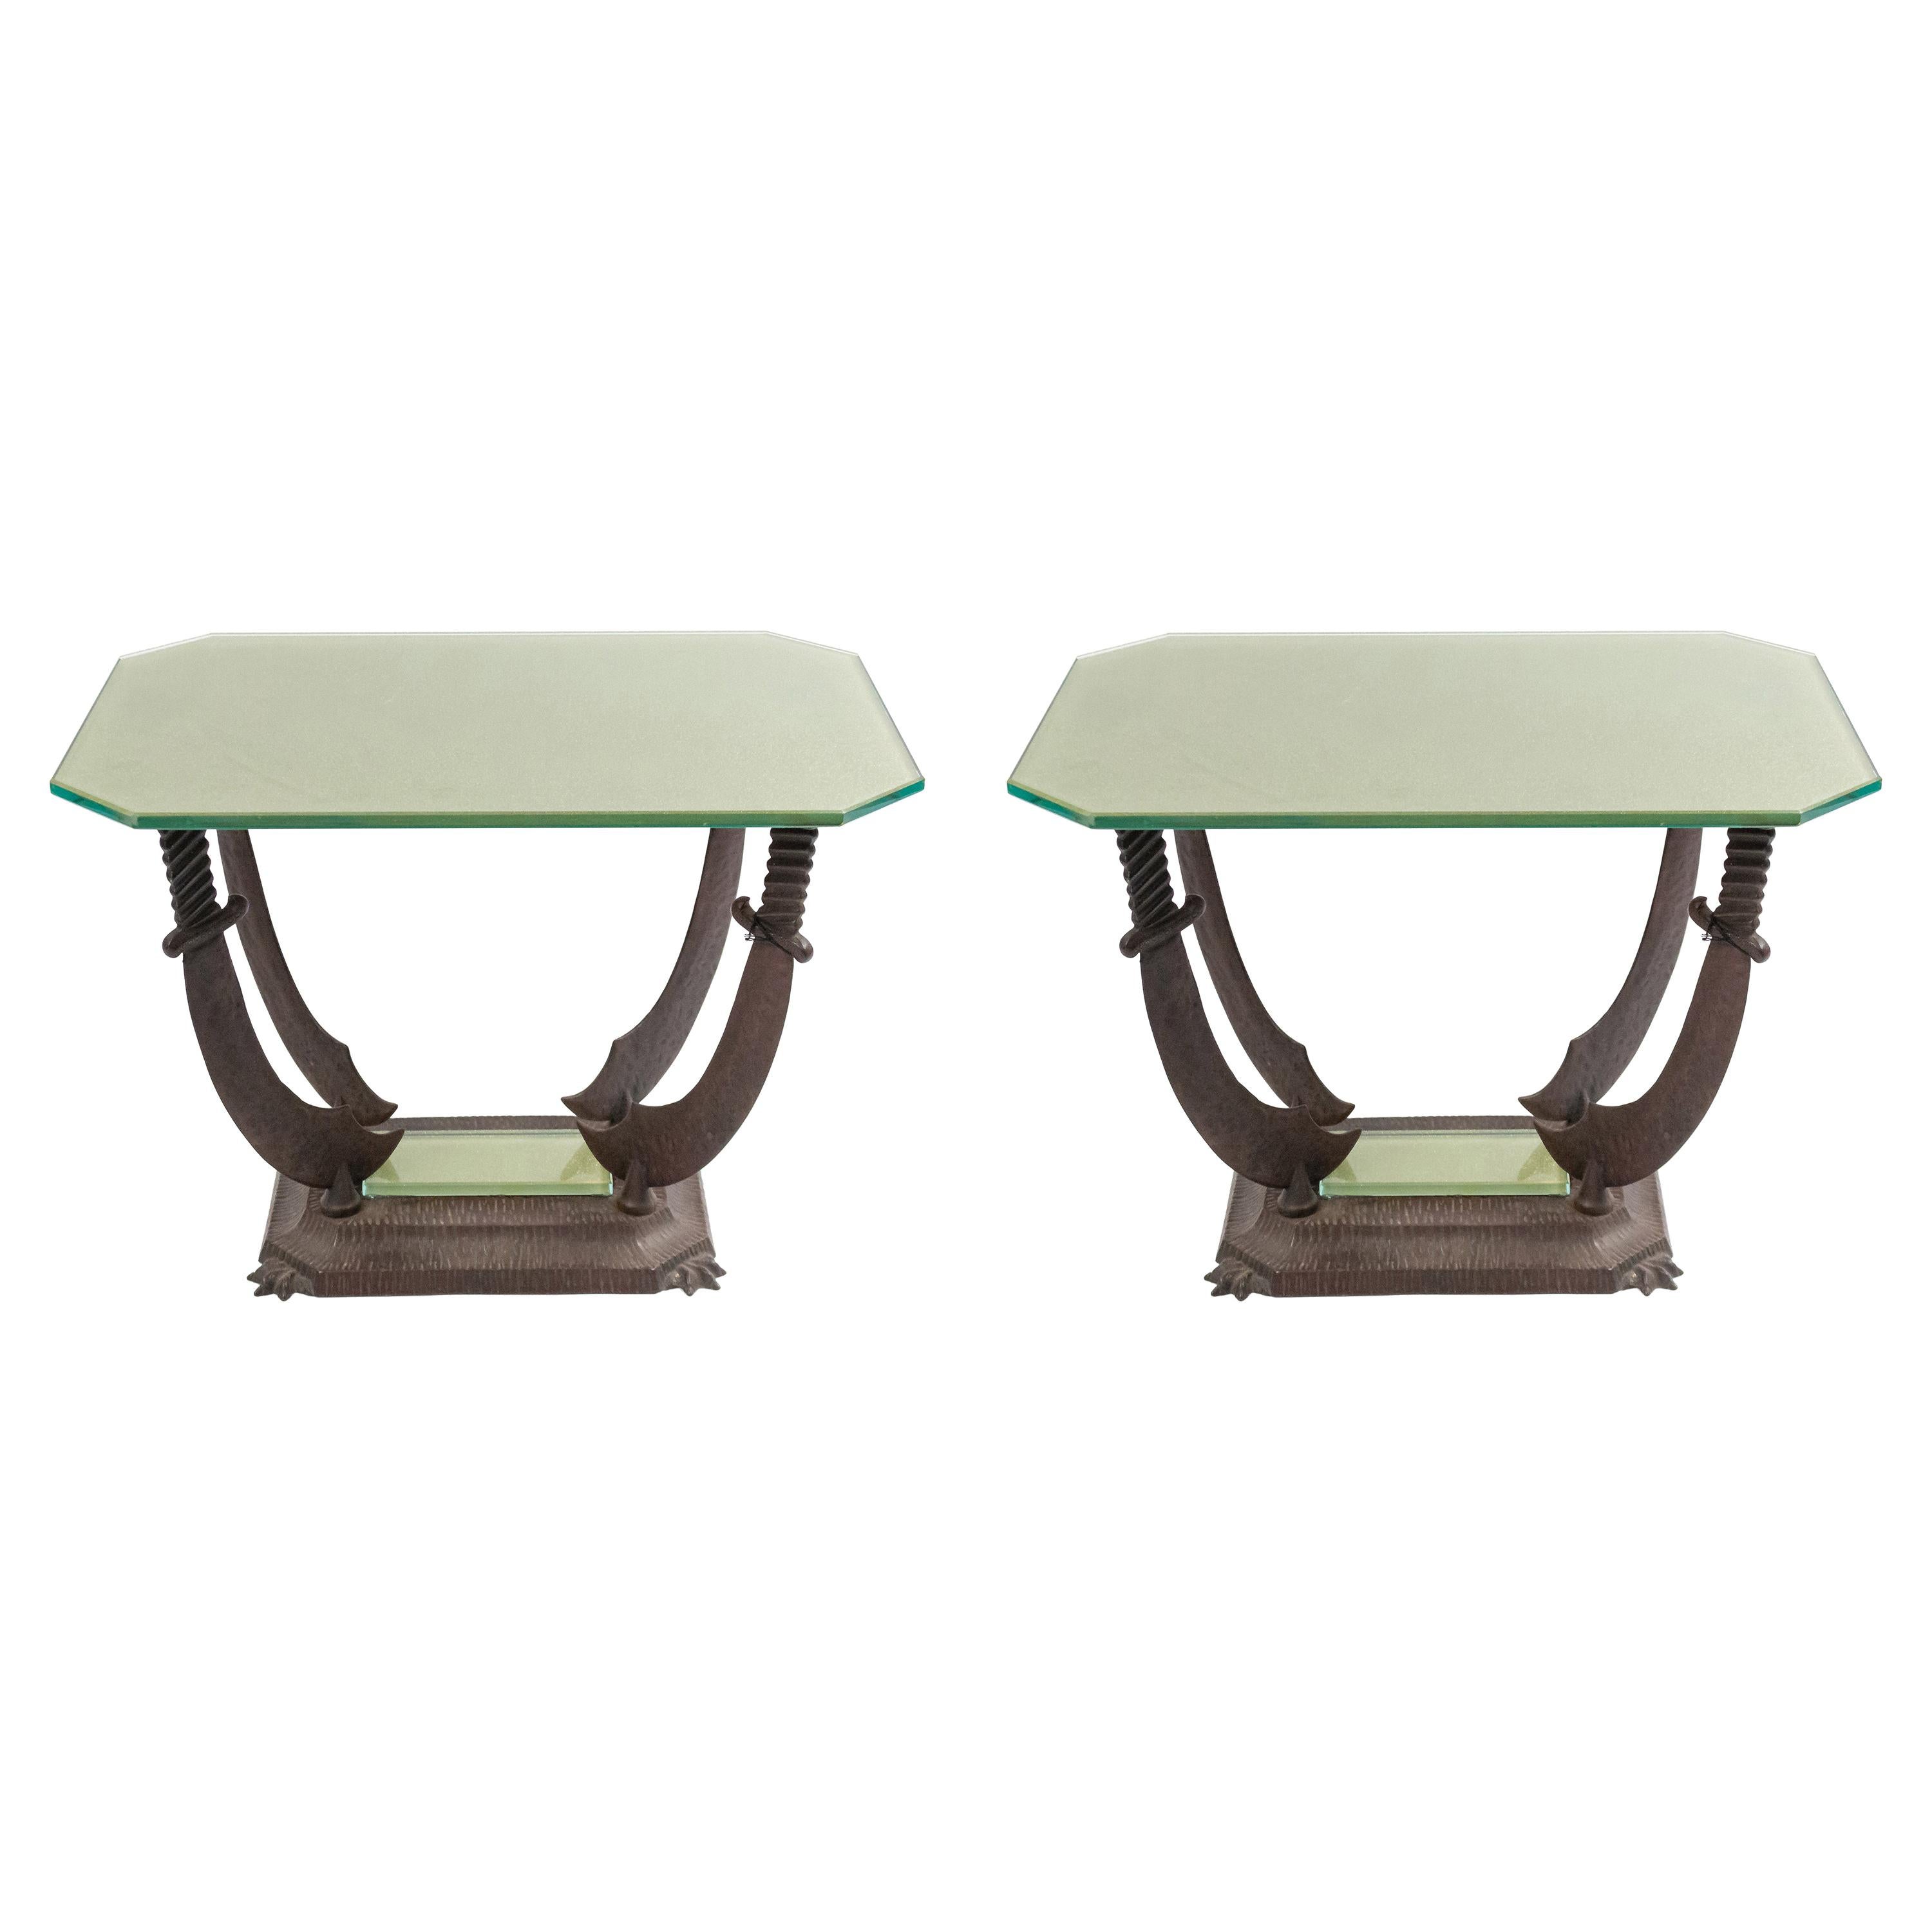 2 tables basses en fer de style Renaissance italienne du début du 20e siècle avec un plateau en verre doré soutenu par 4 sabres reposant sur une base rectangulaire (Prix unitaire).